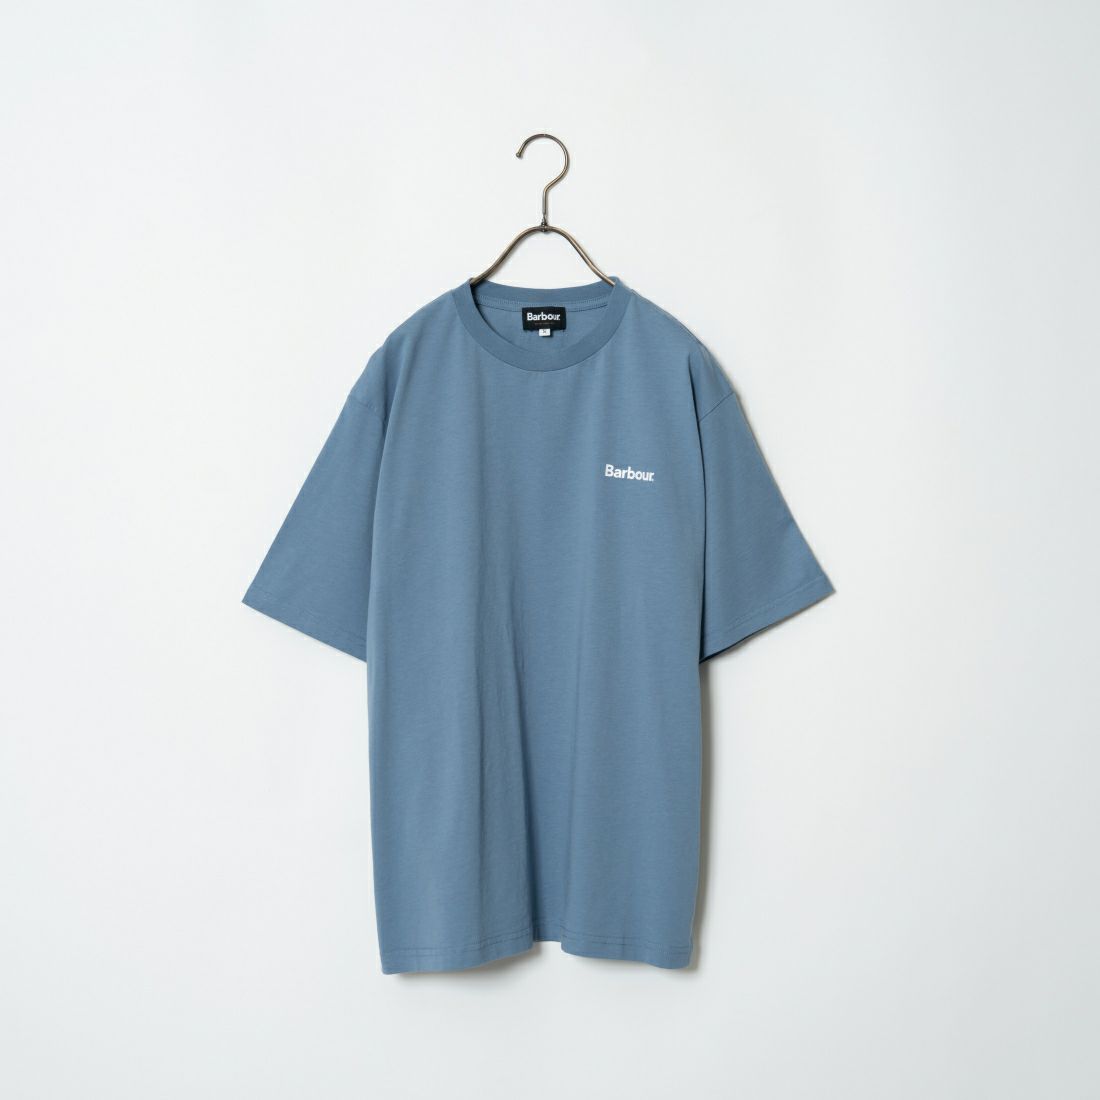 Barbour [バブアー] ベーシックバブアーロゴTシャツ [241MTSG004] DK.BLUE